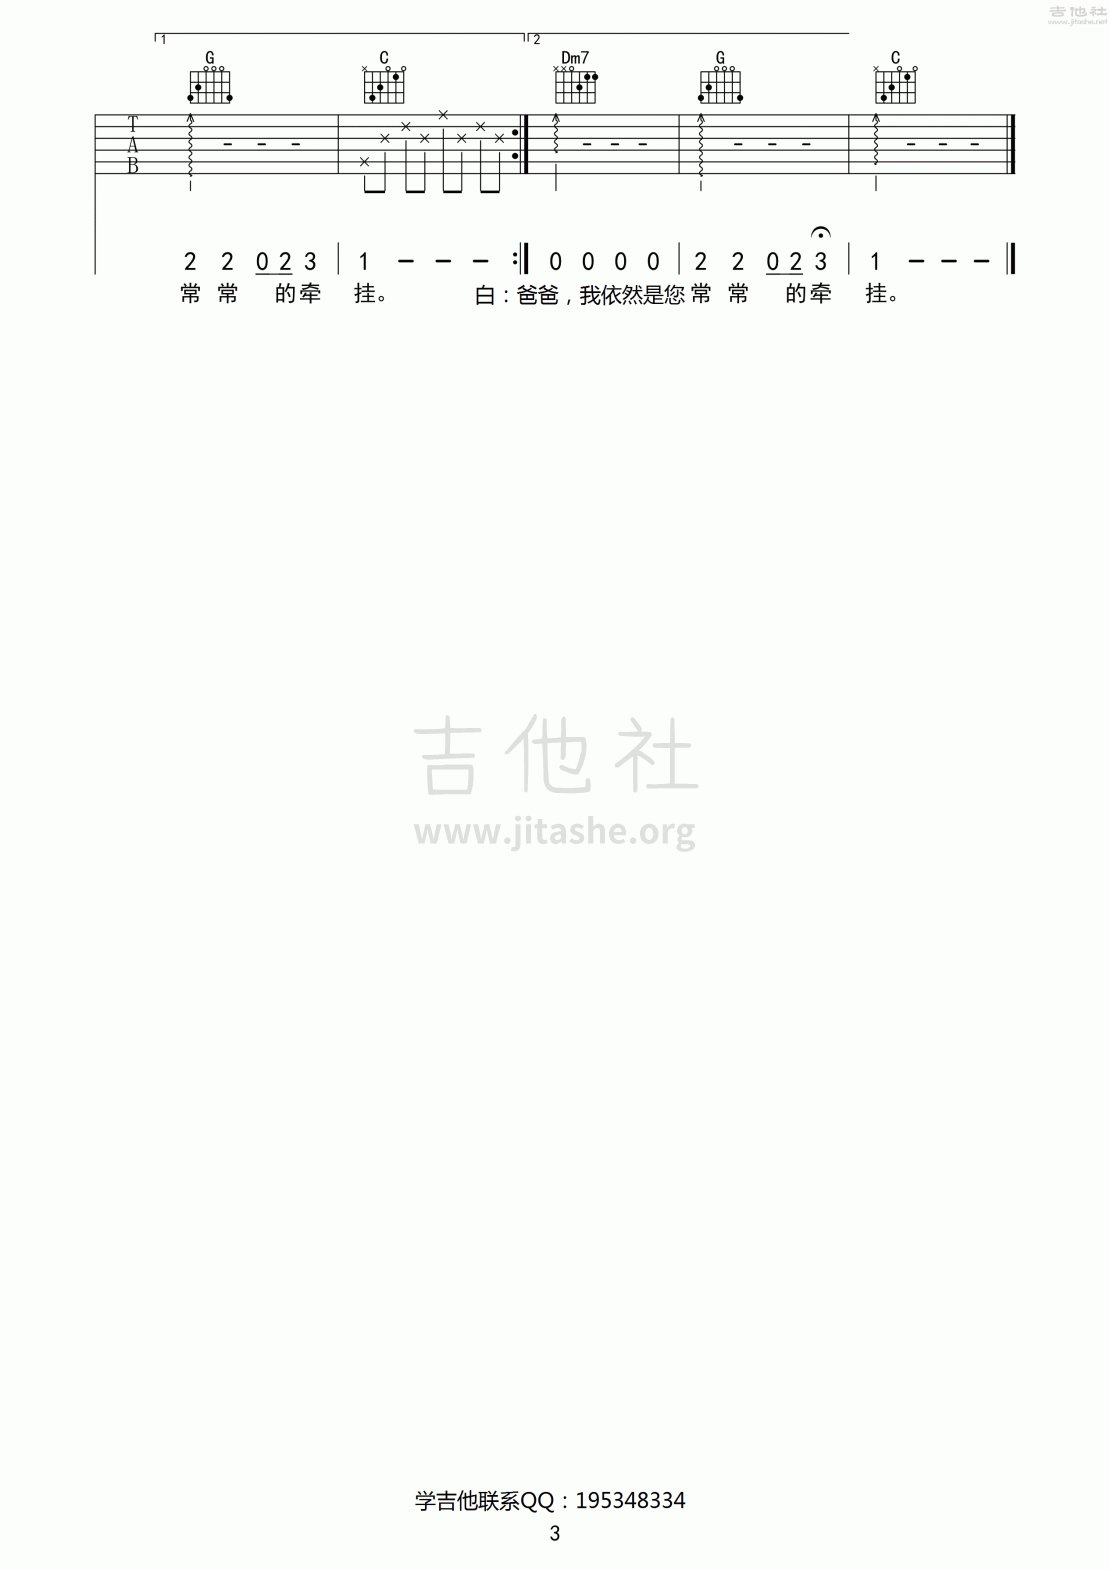 沐阳(电视剧《麻辣女兵》插曲)吉他谱(图片谱)_原声带(OST;Original Soundtrack;电影)_沐阳_3.gif